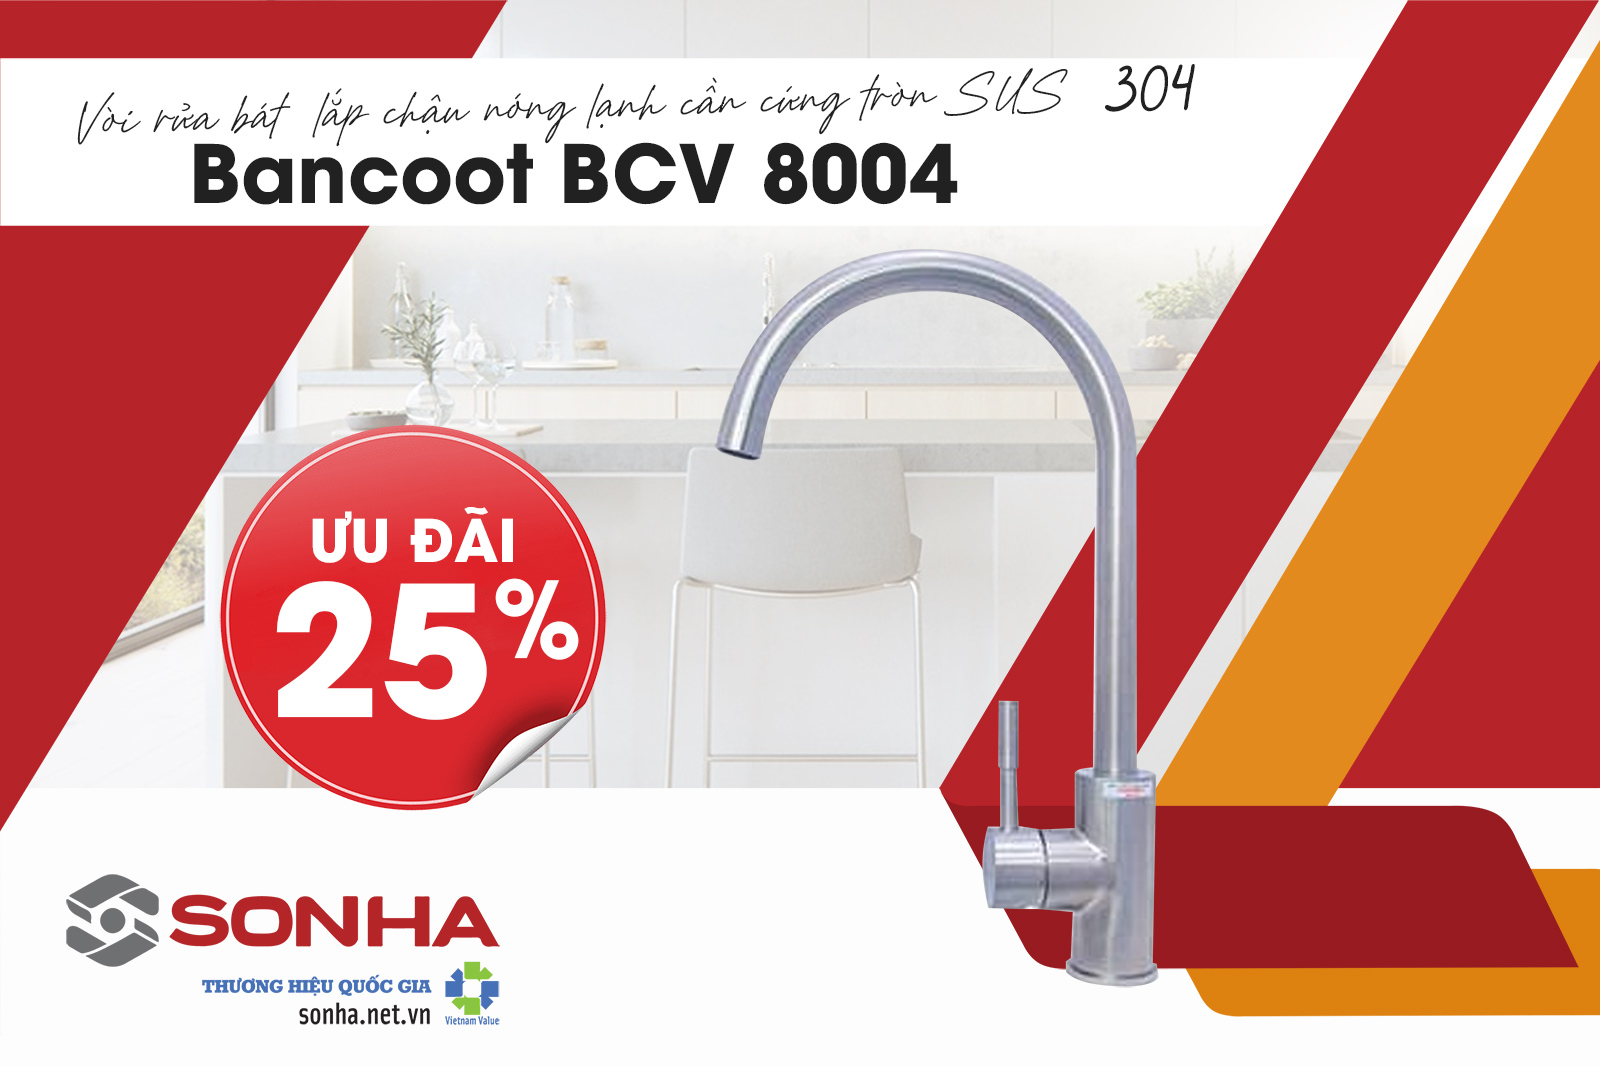 Tham khảo vòi rửa bát Bancoot BCV 8004